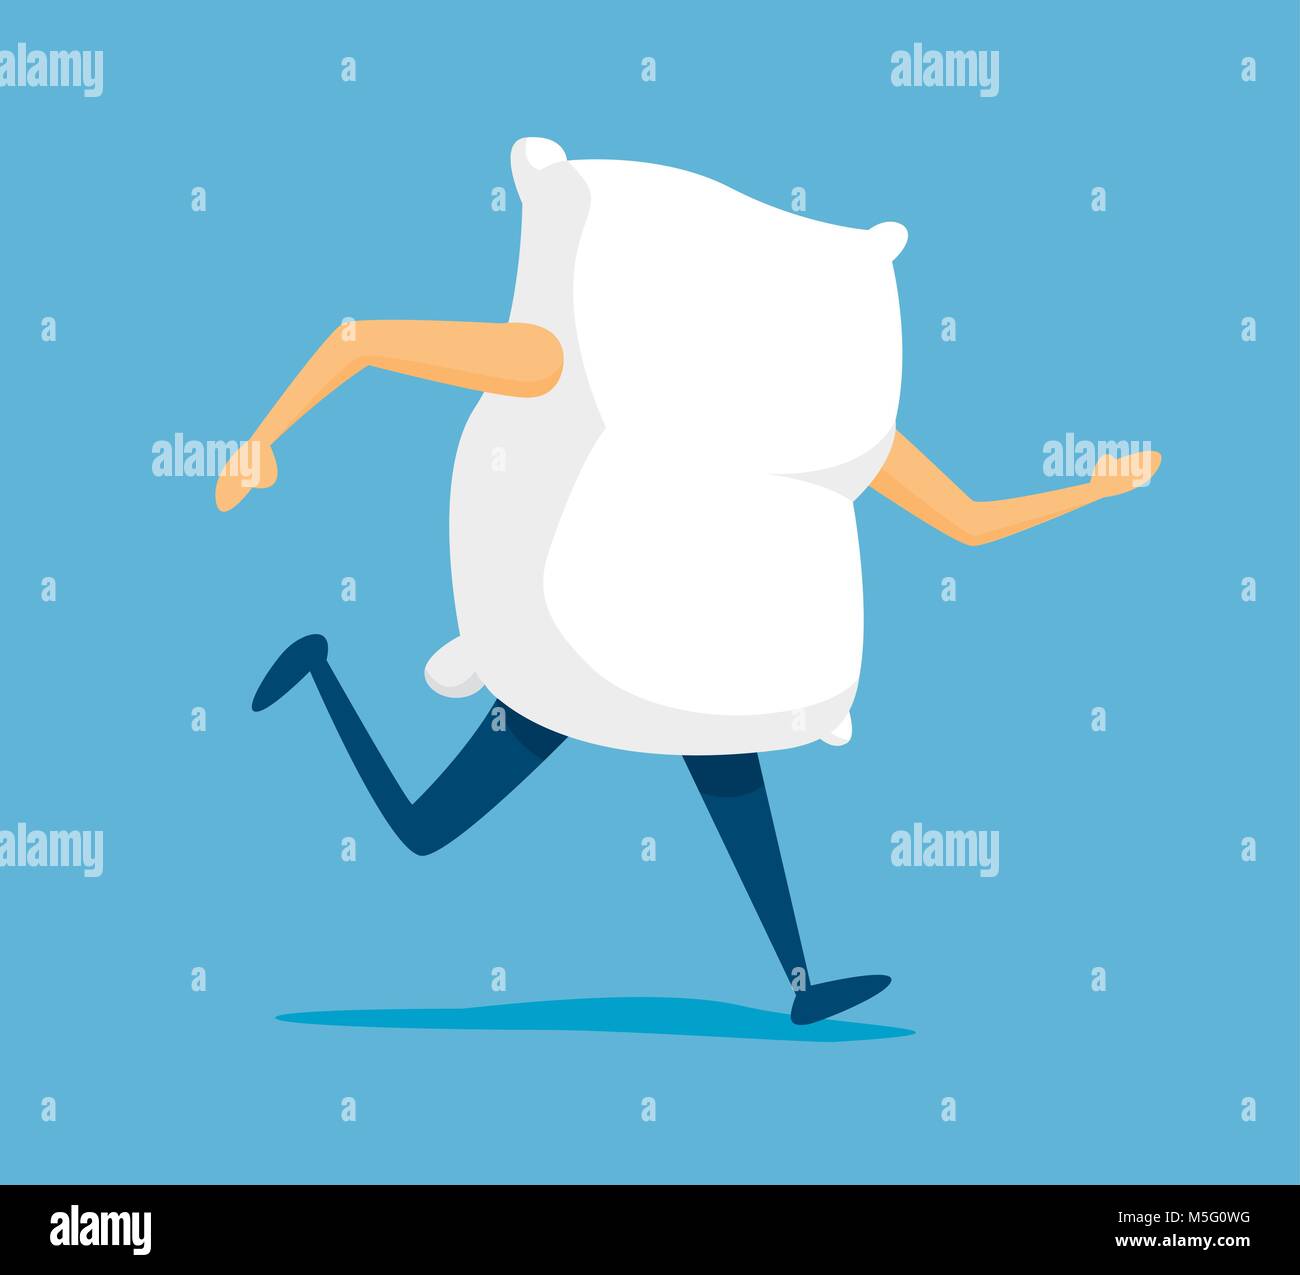 Cartoon illustration of white pillow on the run to sleep Stock Vector